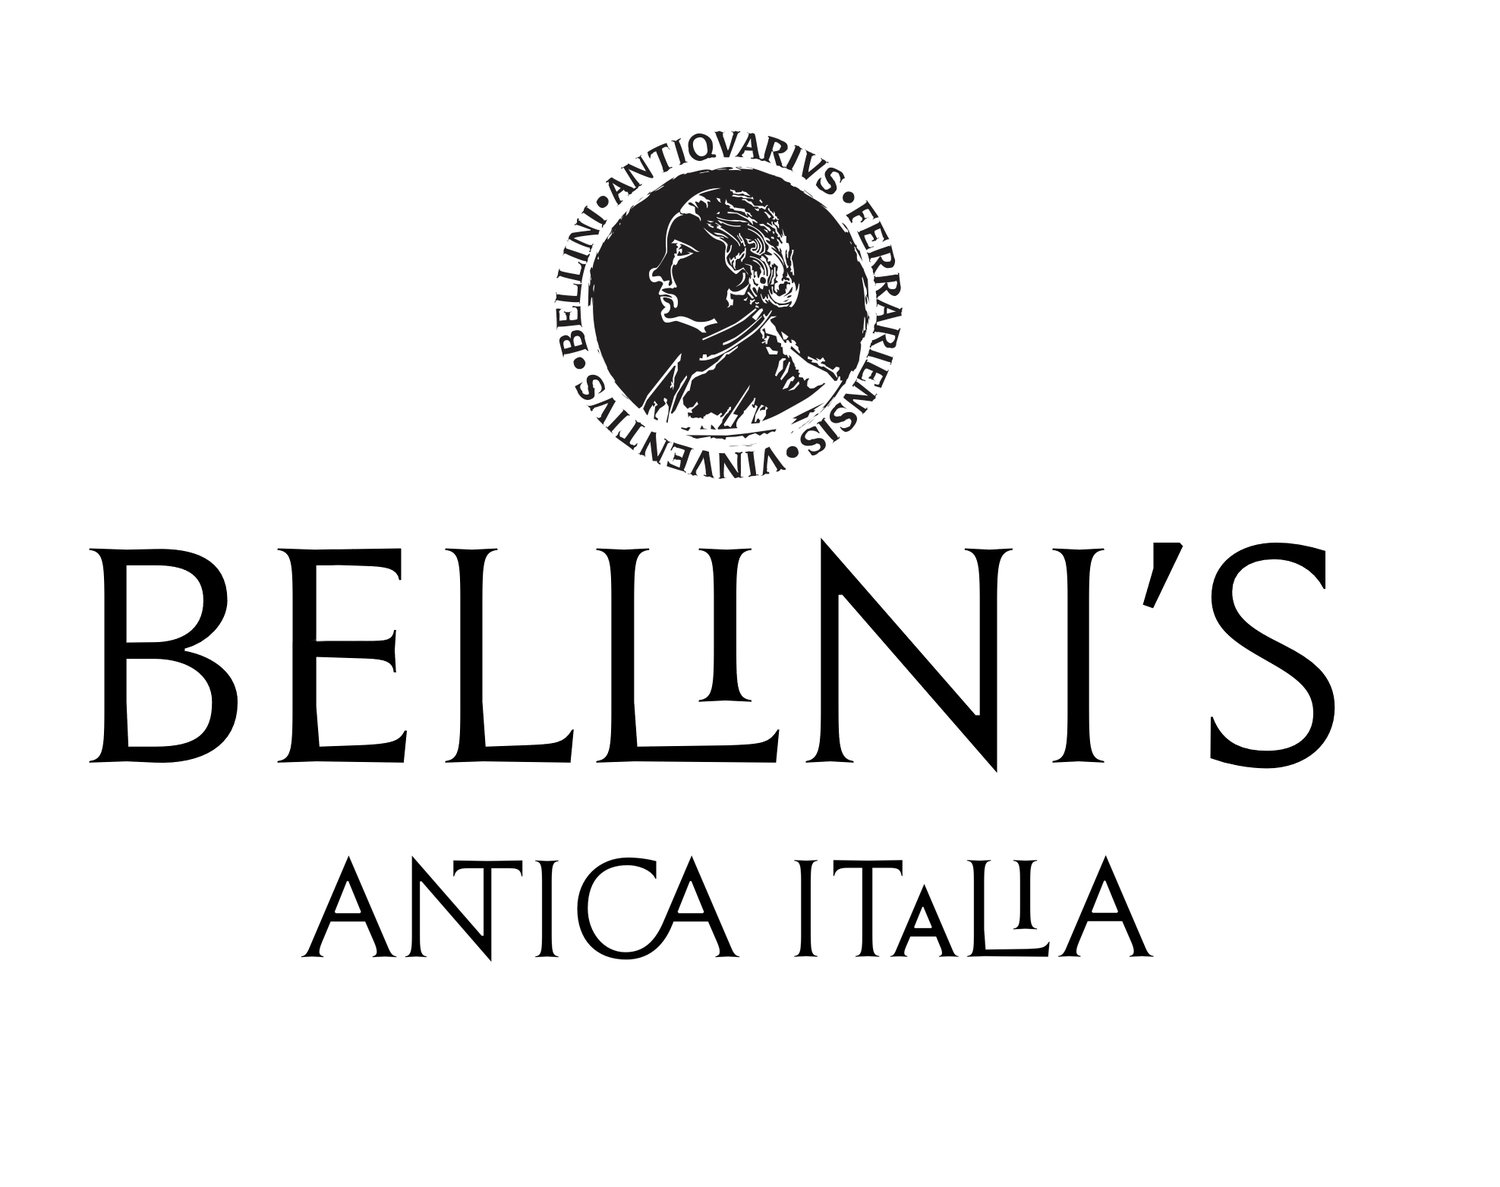 Bellini's Antique Italia